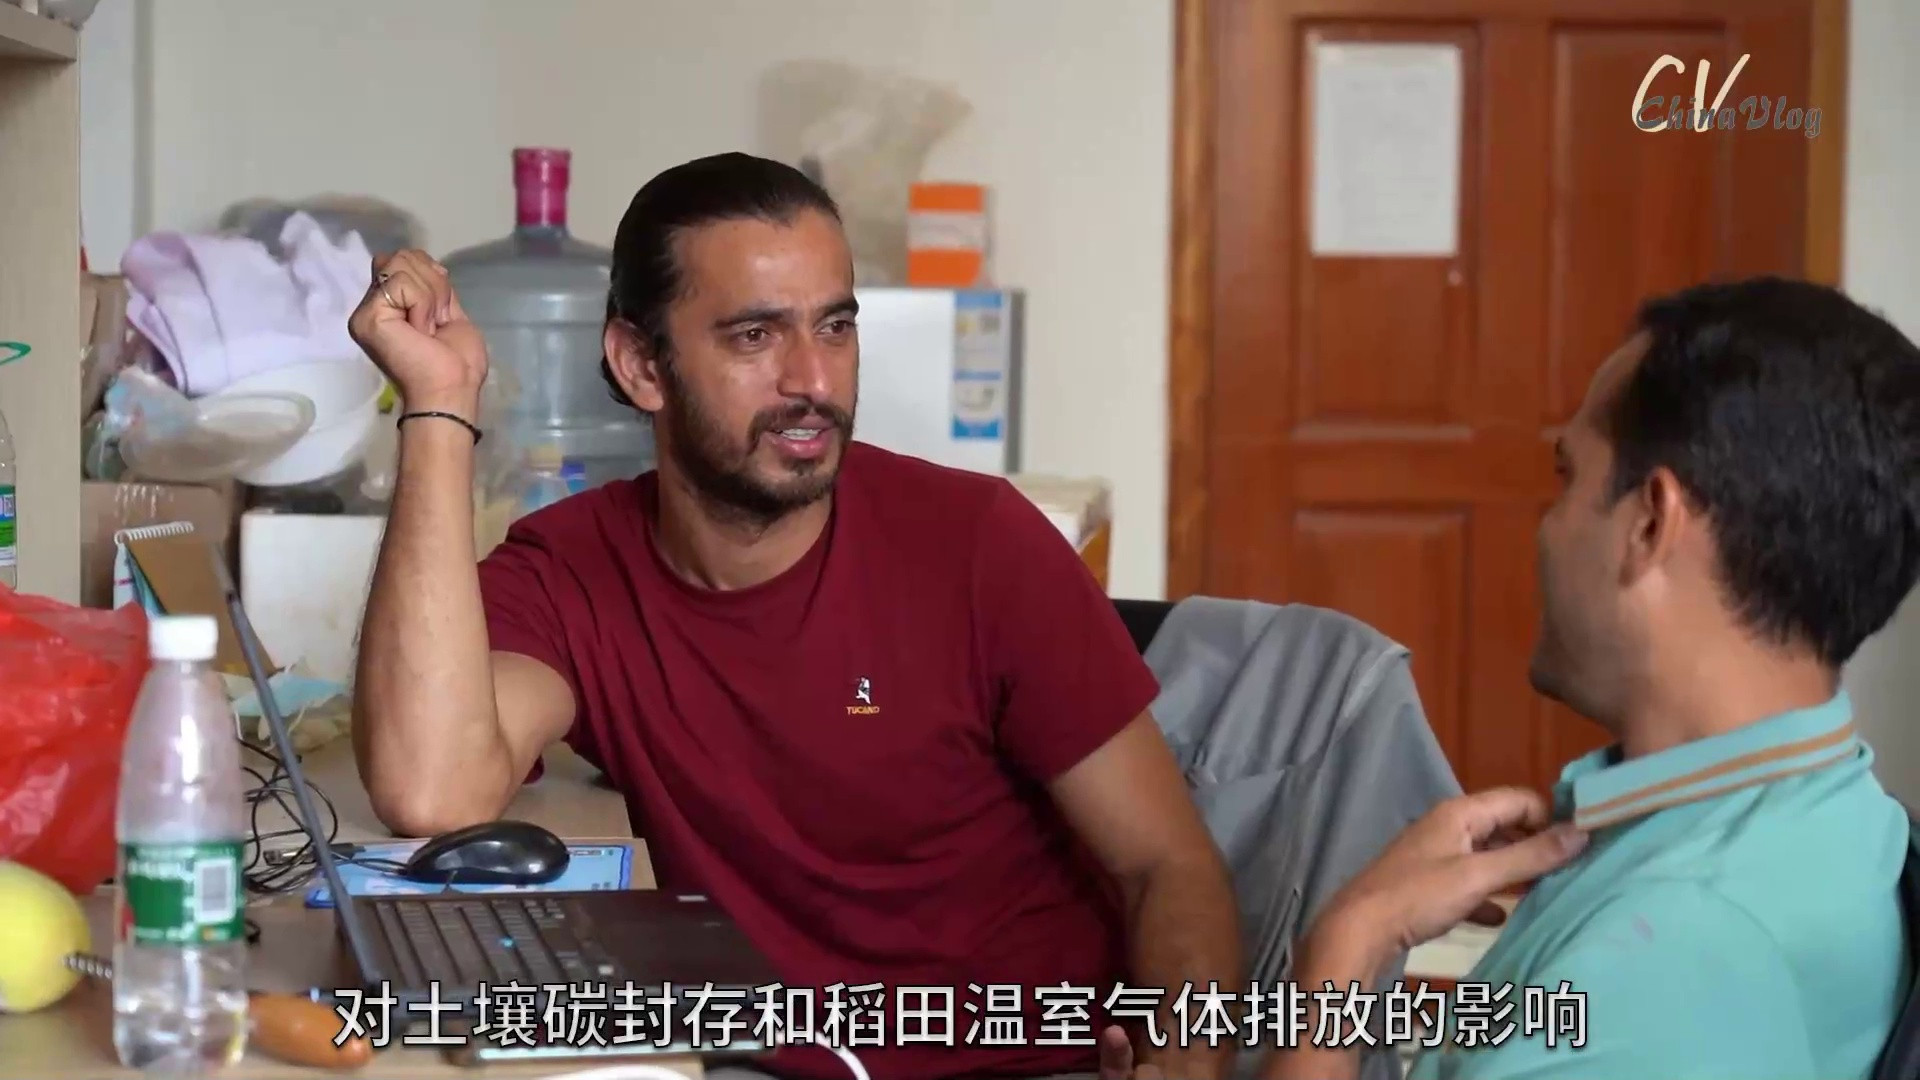 中国Vlog|我在中国看秋收: 巴铁博士追寻“科技兴农”梦想